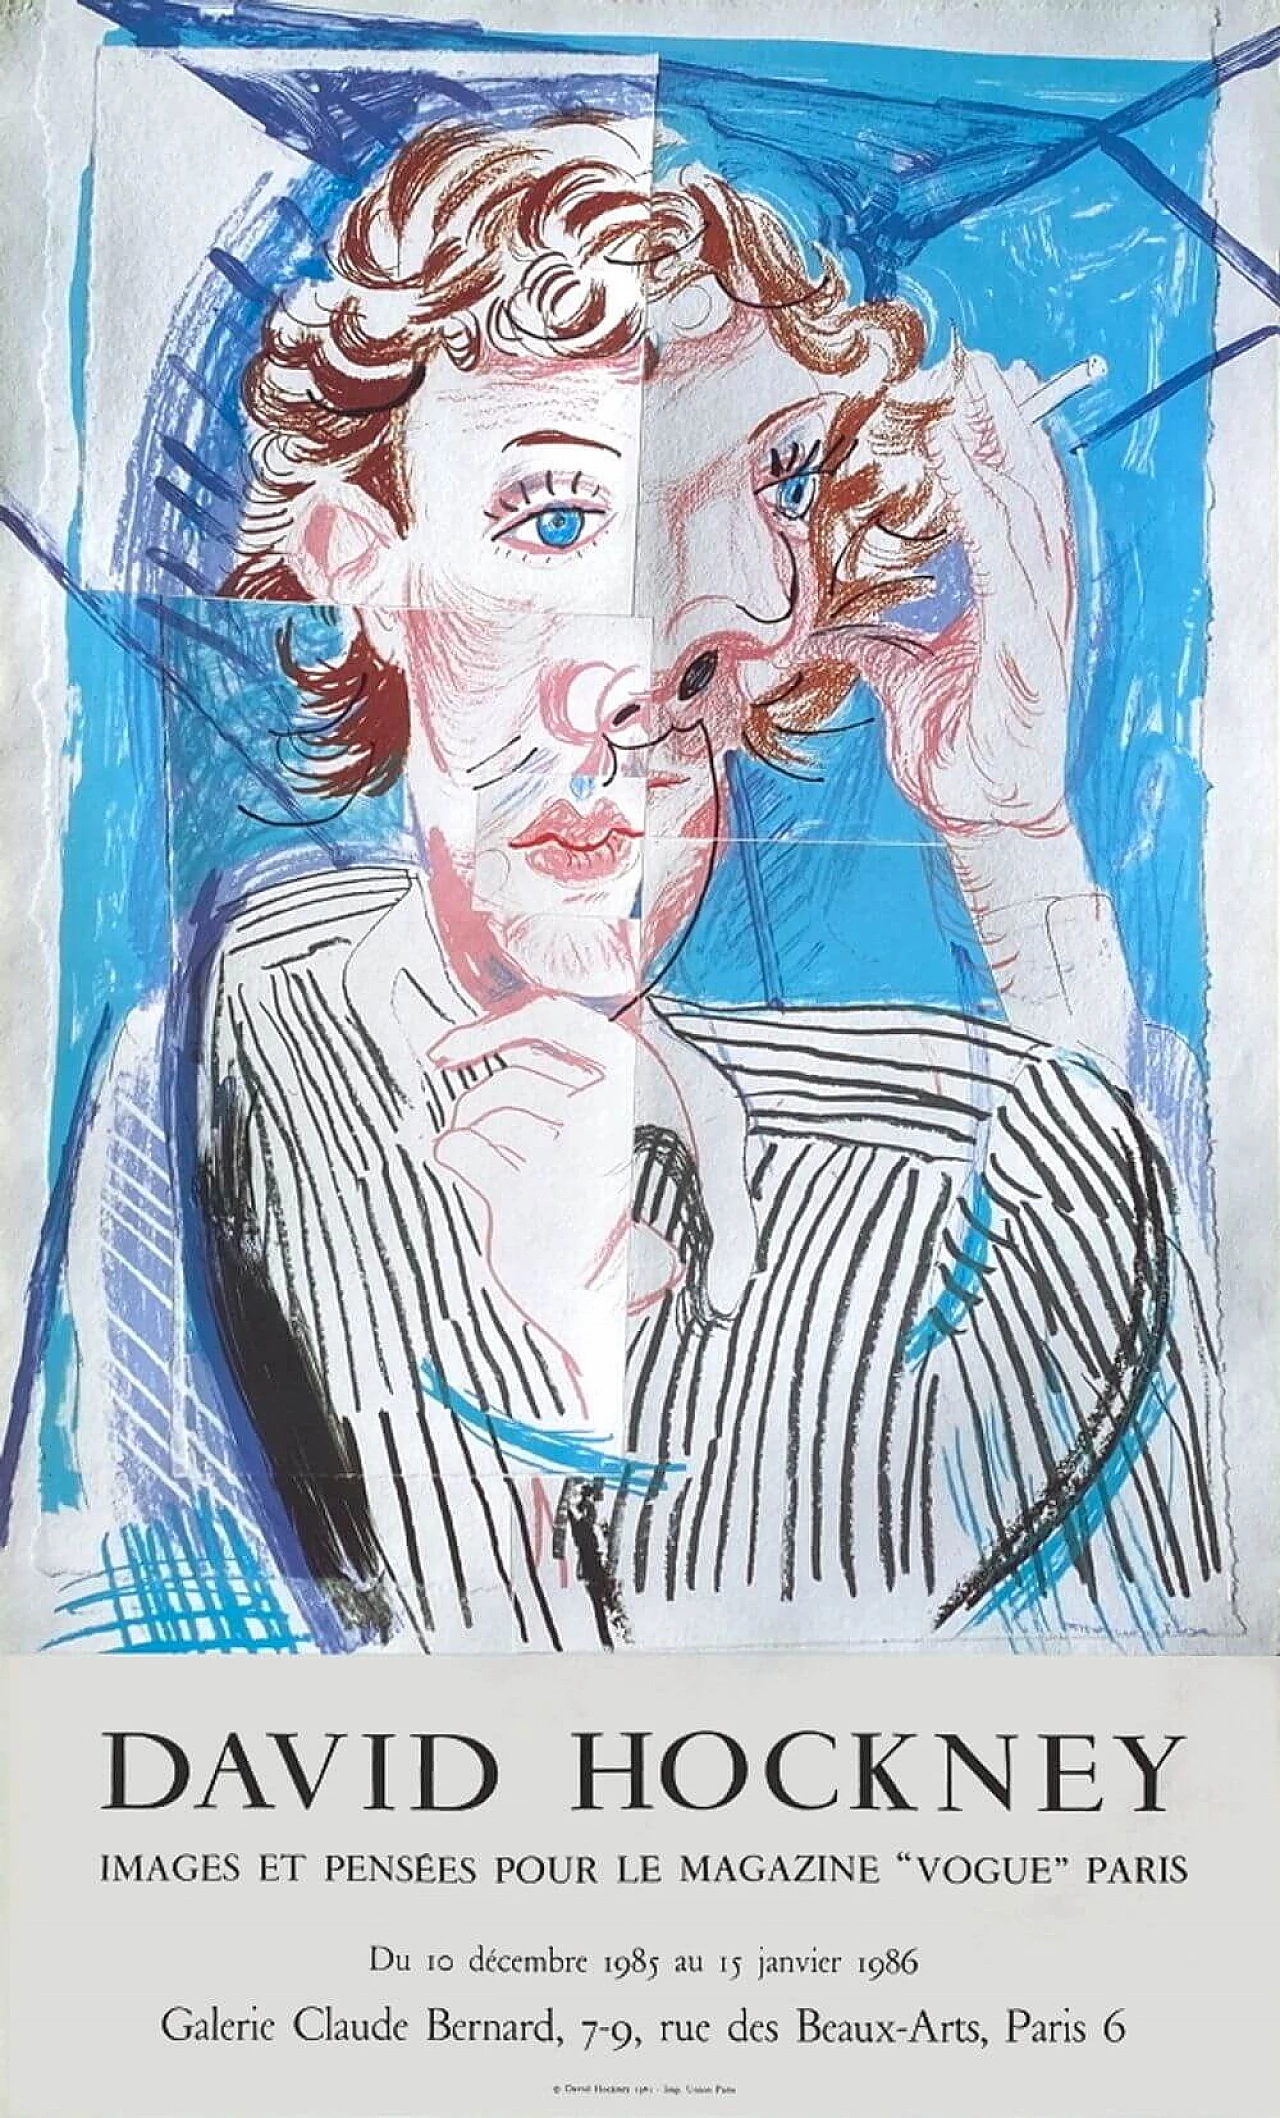 David Hockney Exhibition Poster, 1986 1219444